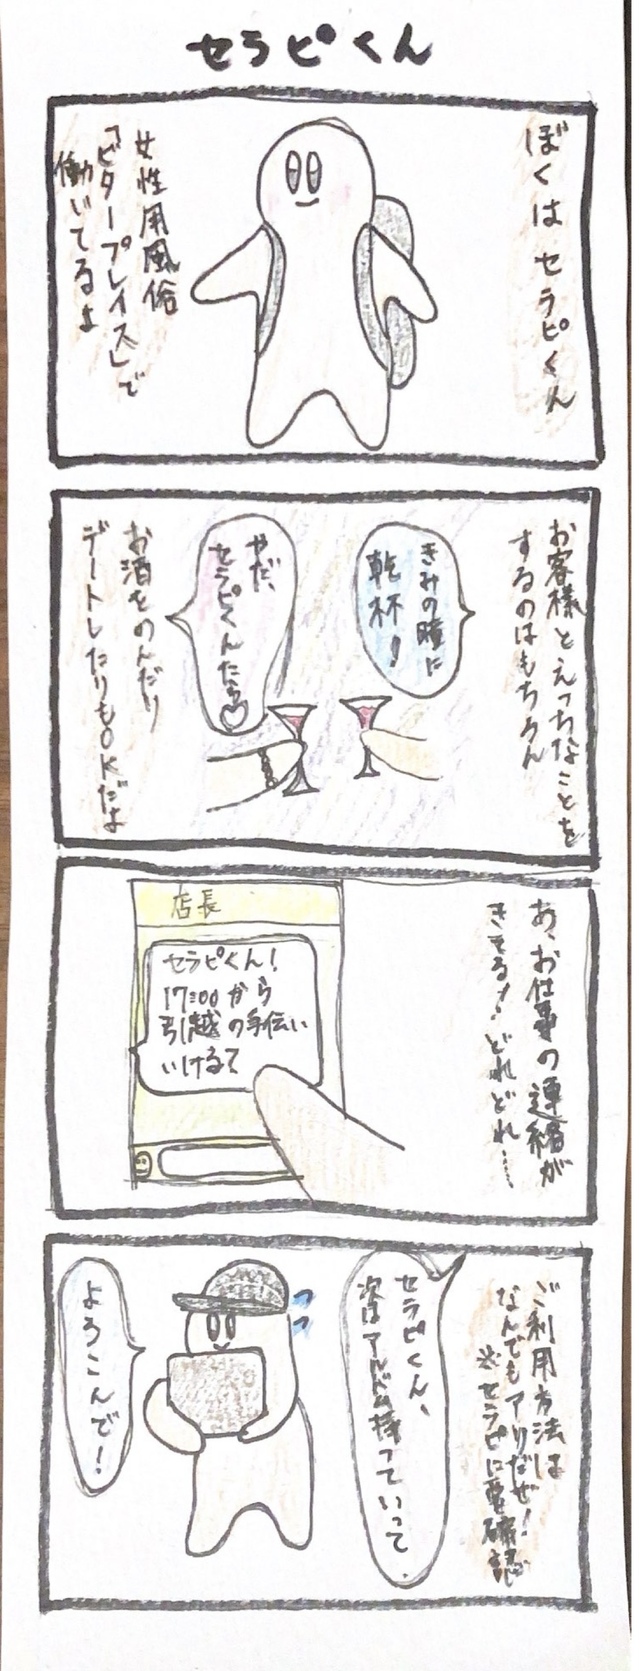 女風4コマ漫画「セラピくん」